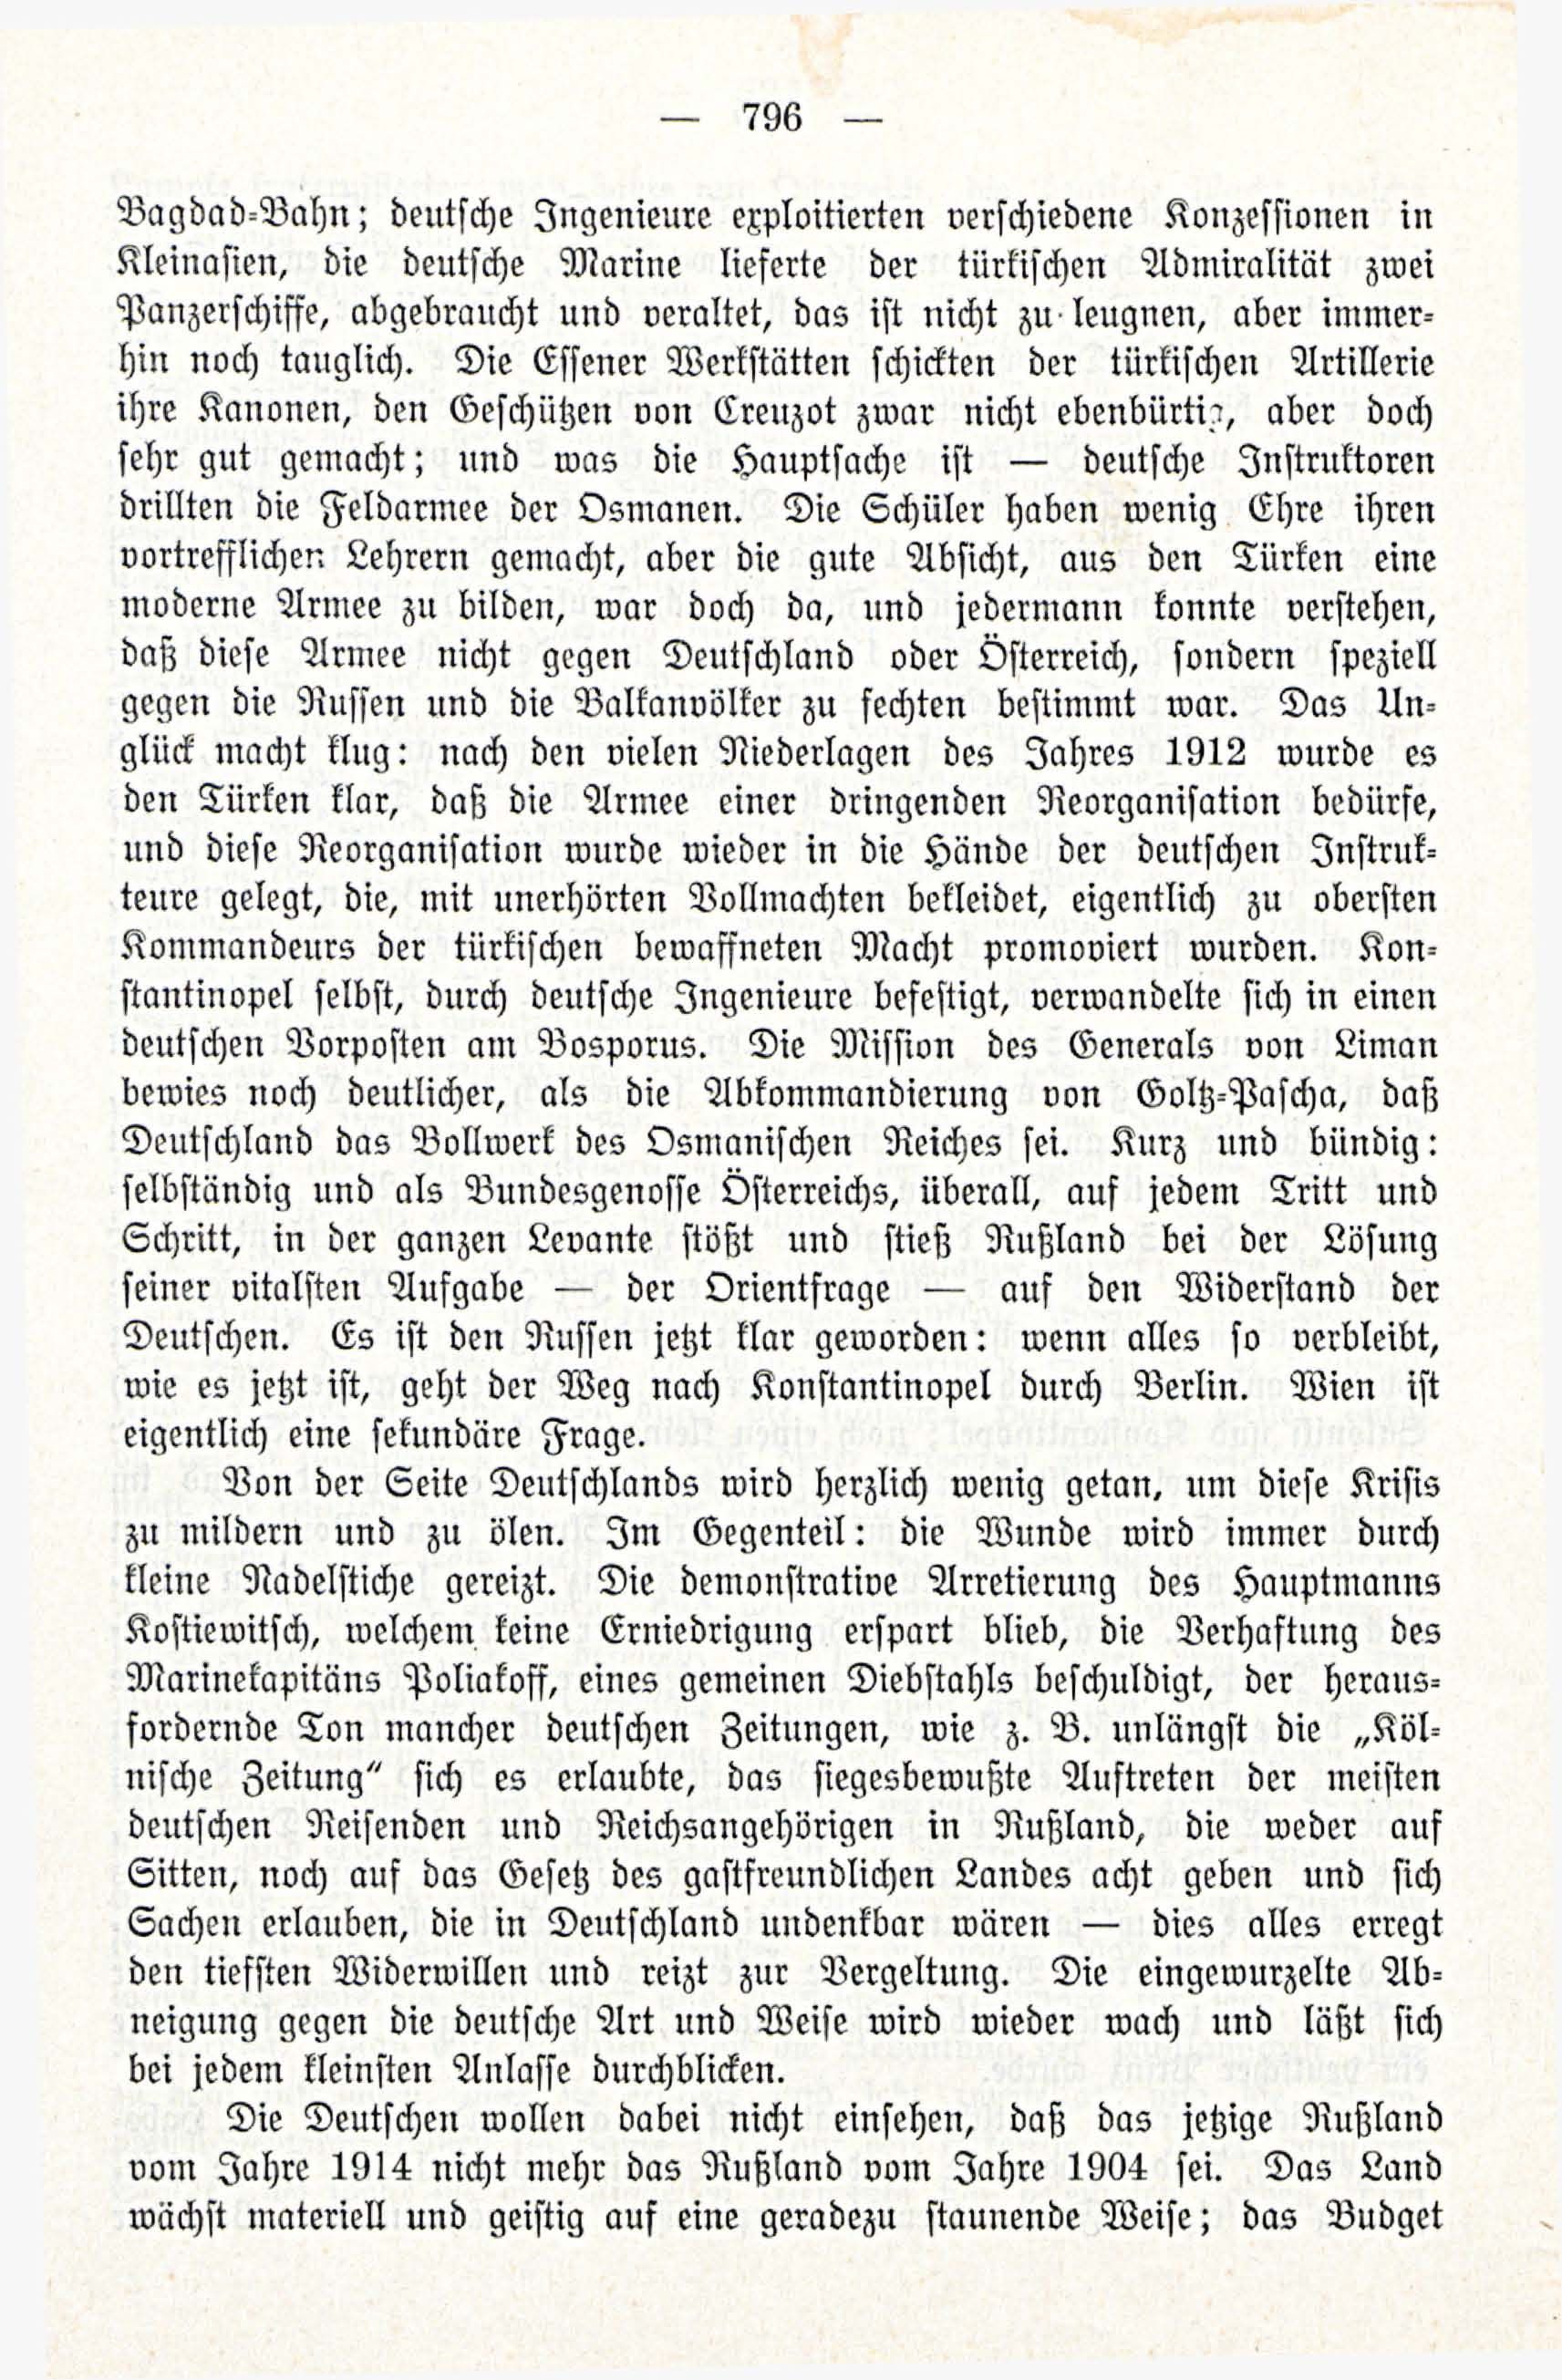 Deutsche Monatsschrift für Russland [3/12] (1914) | 12. (796) Main body of text